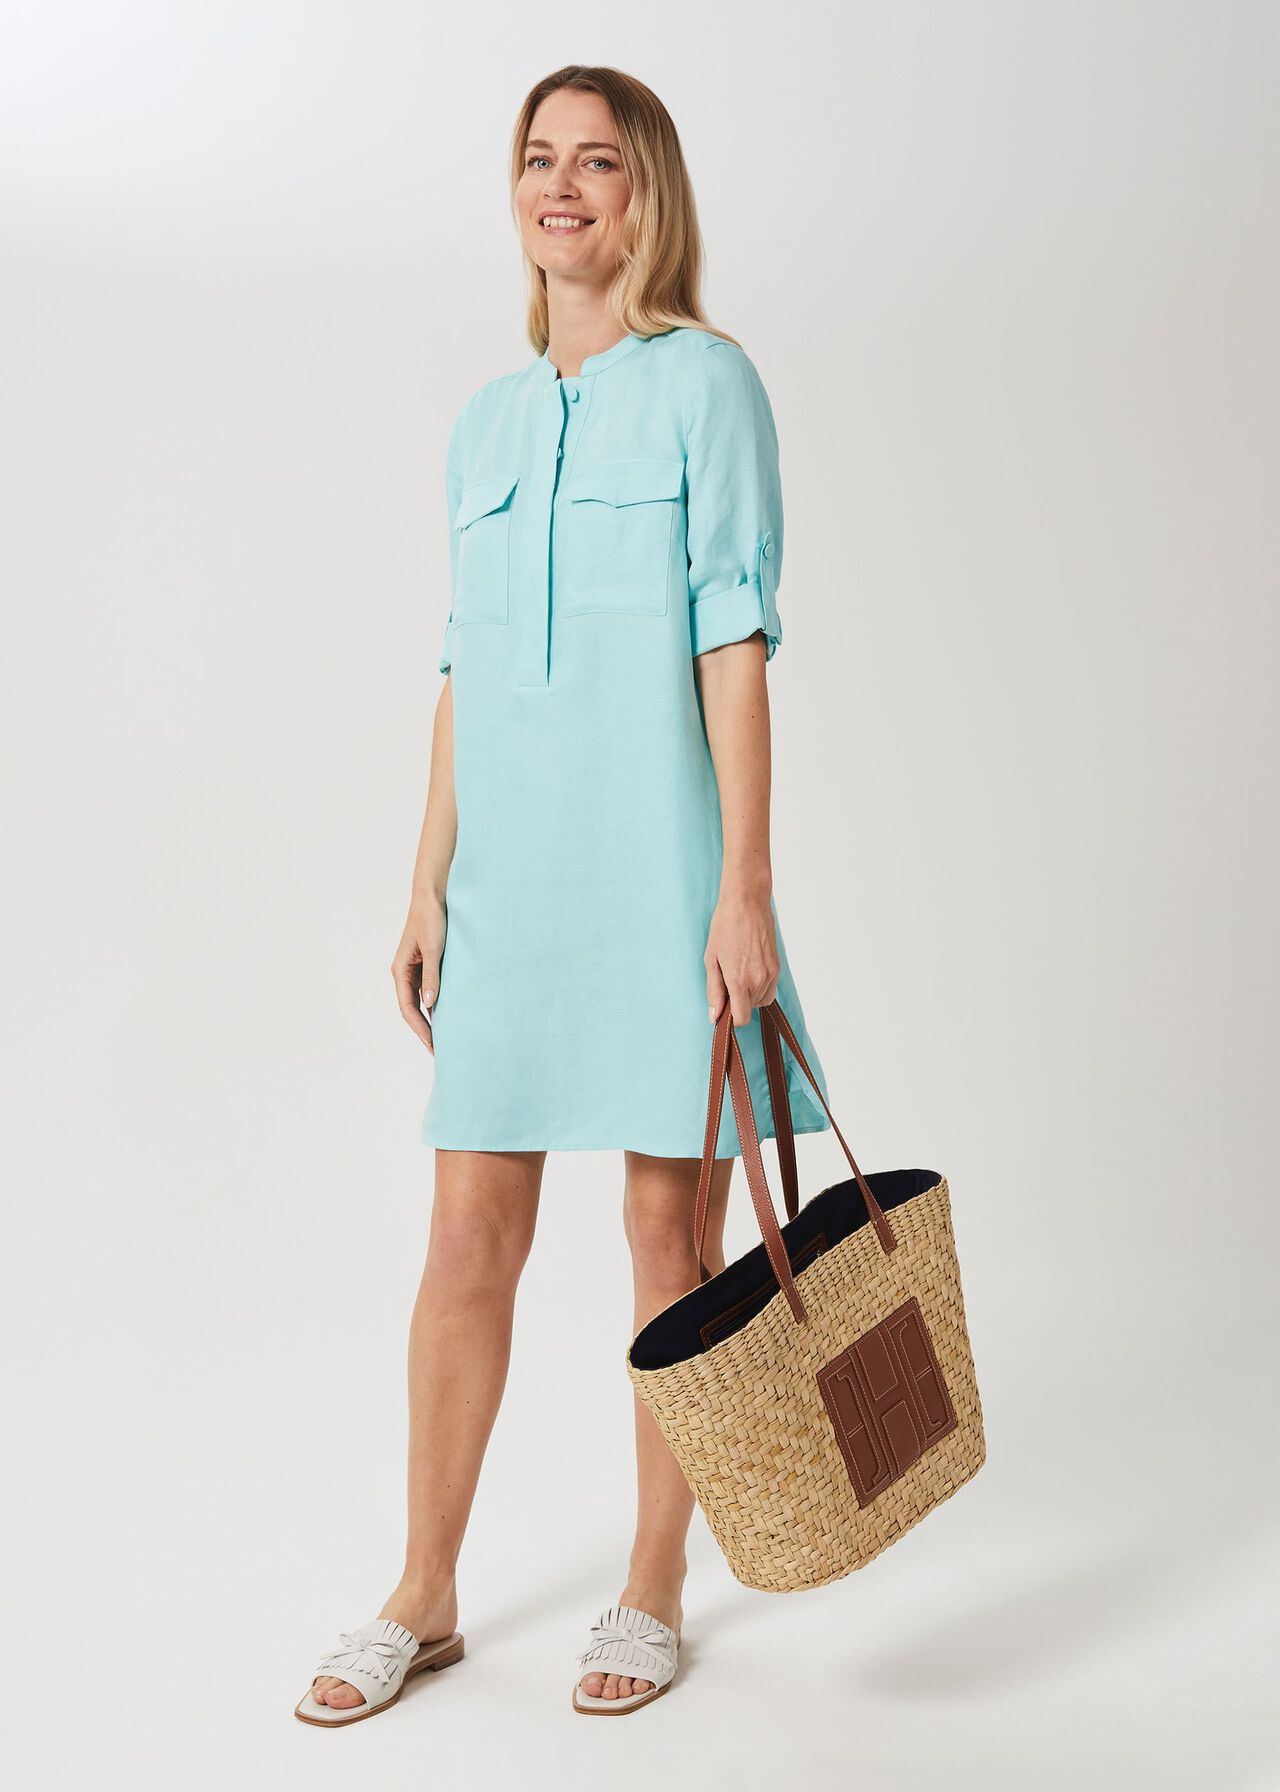 Milla Linen Blend Tunic Dress, Aqua, hi-res